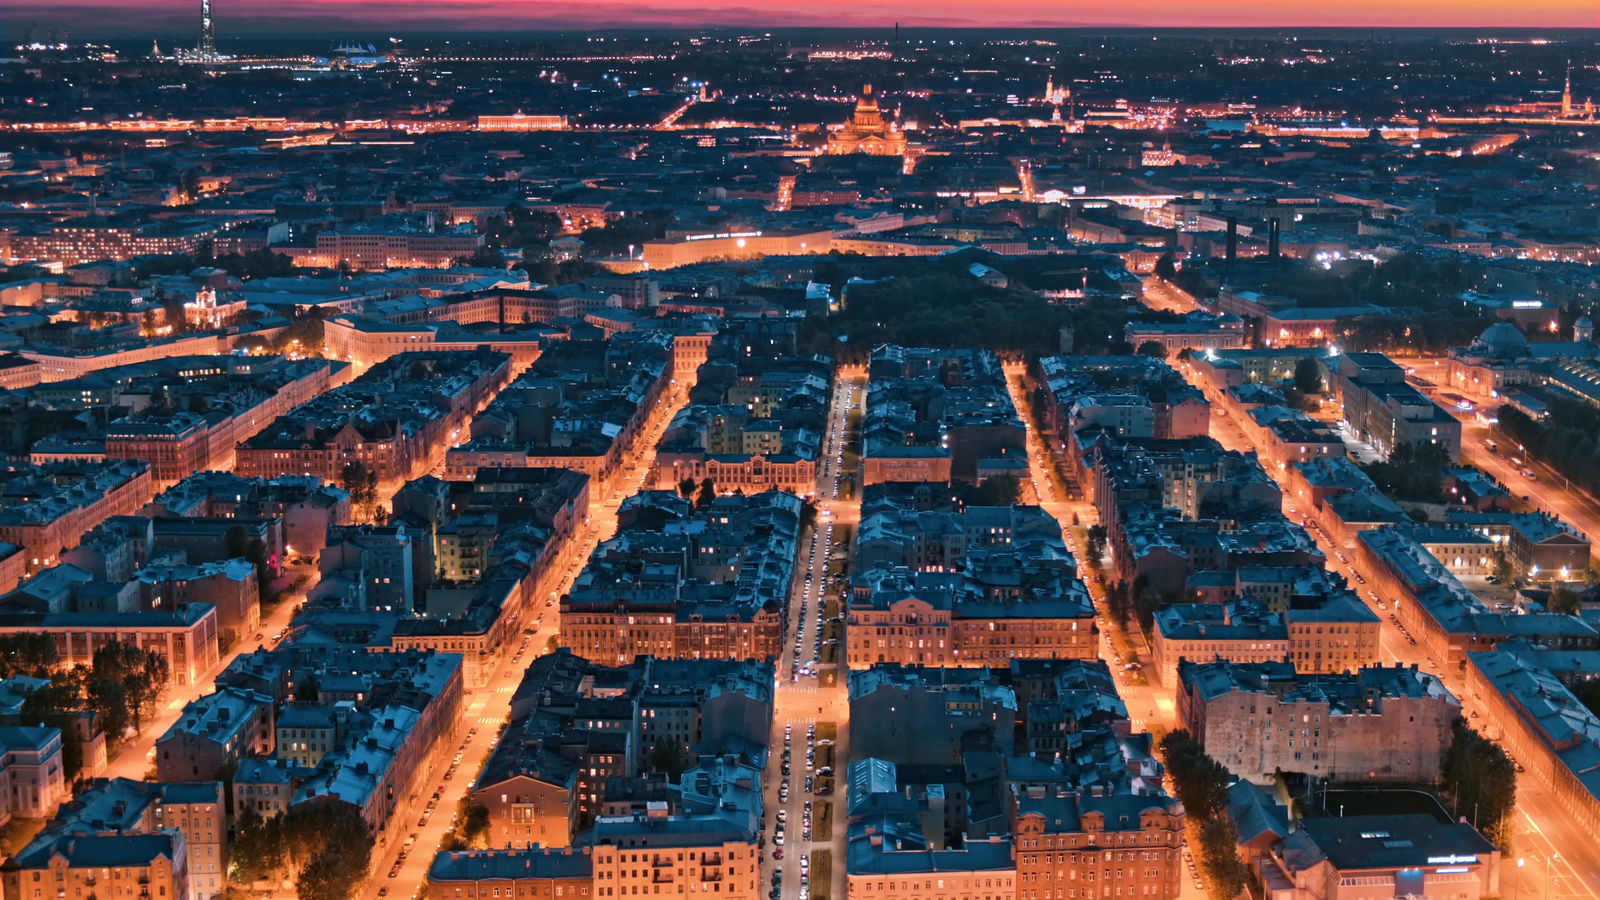 Ночной петербург с высоты птичьего полета фото